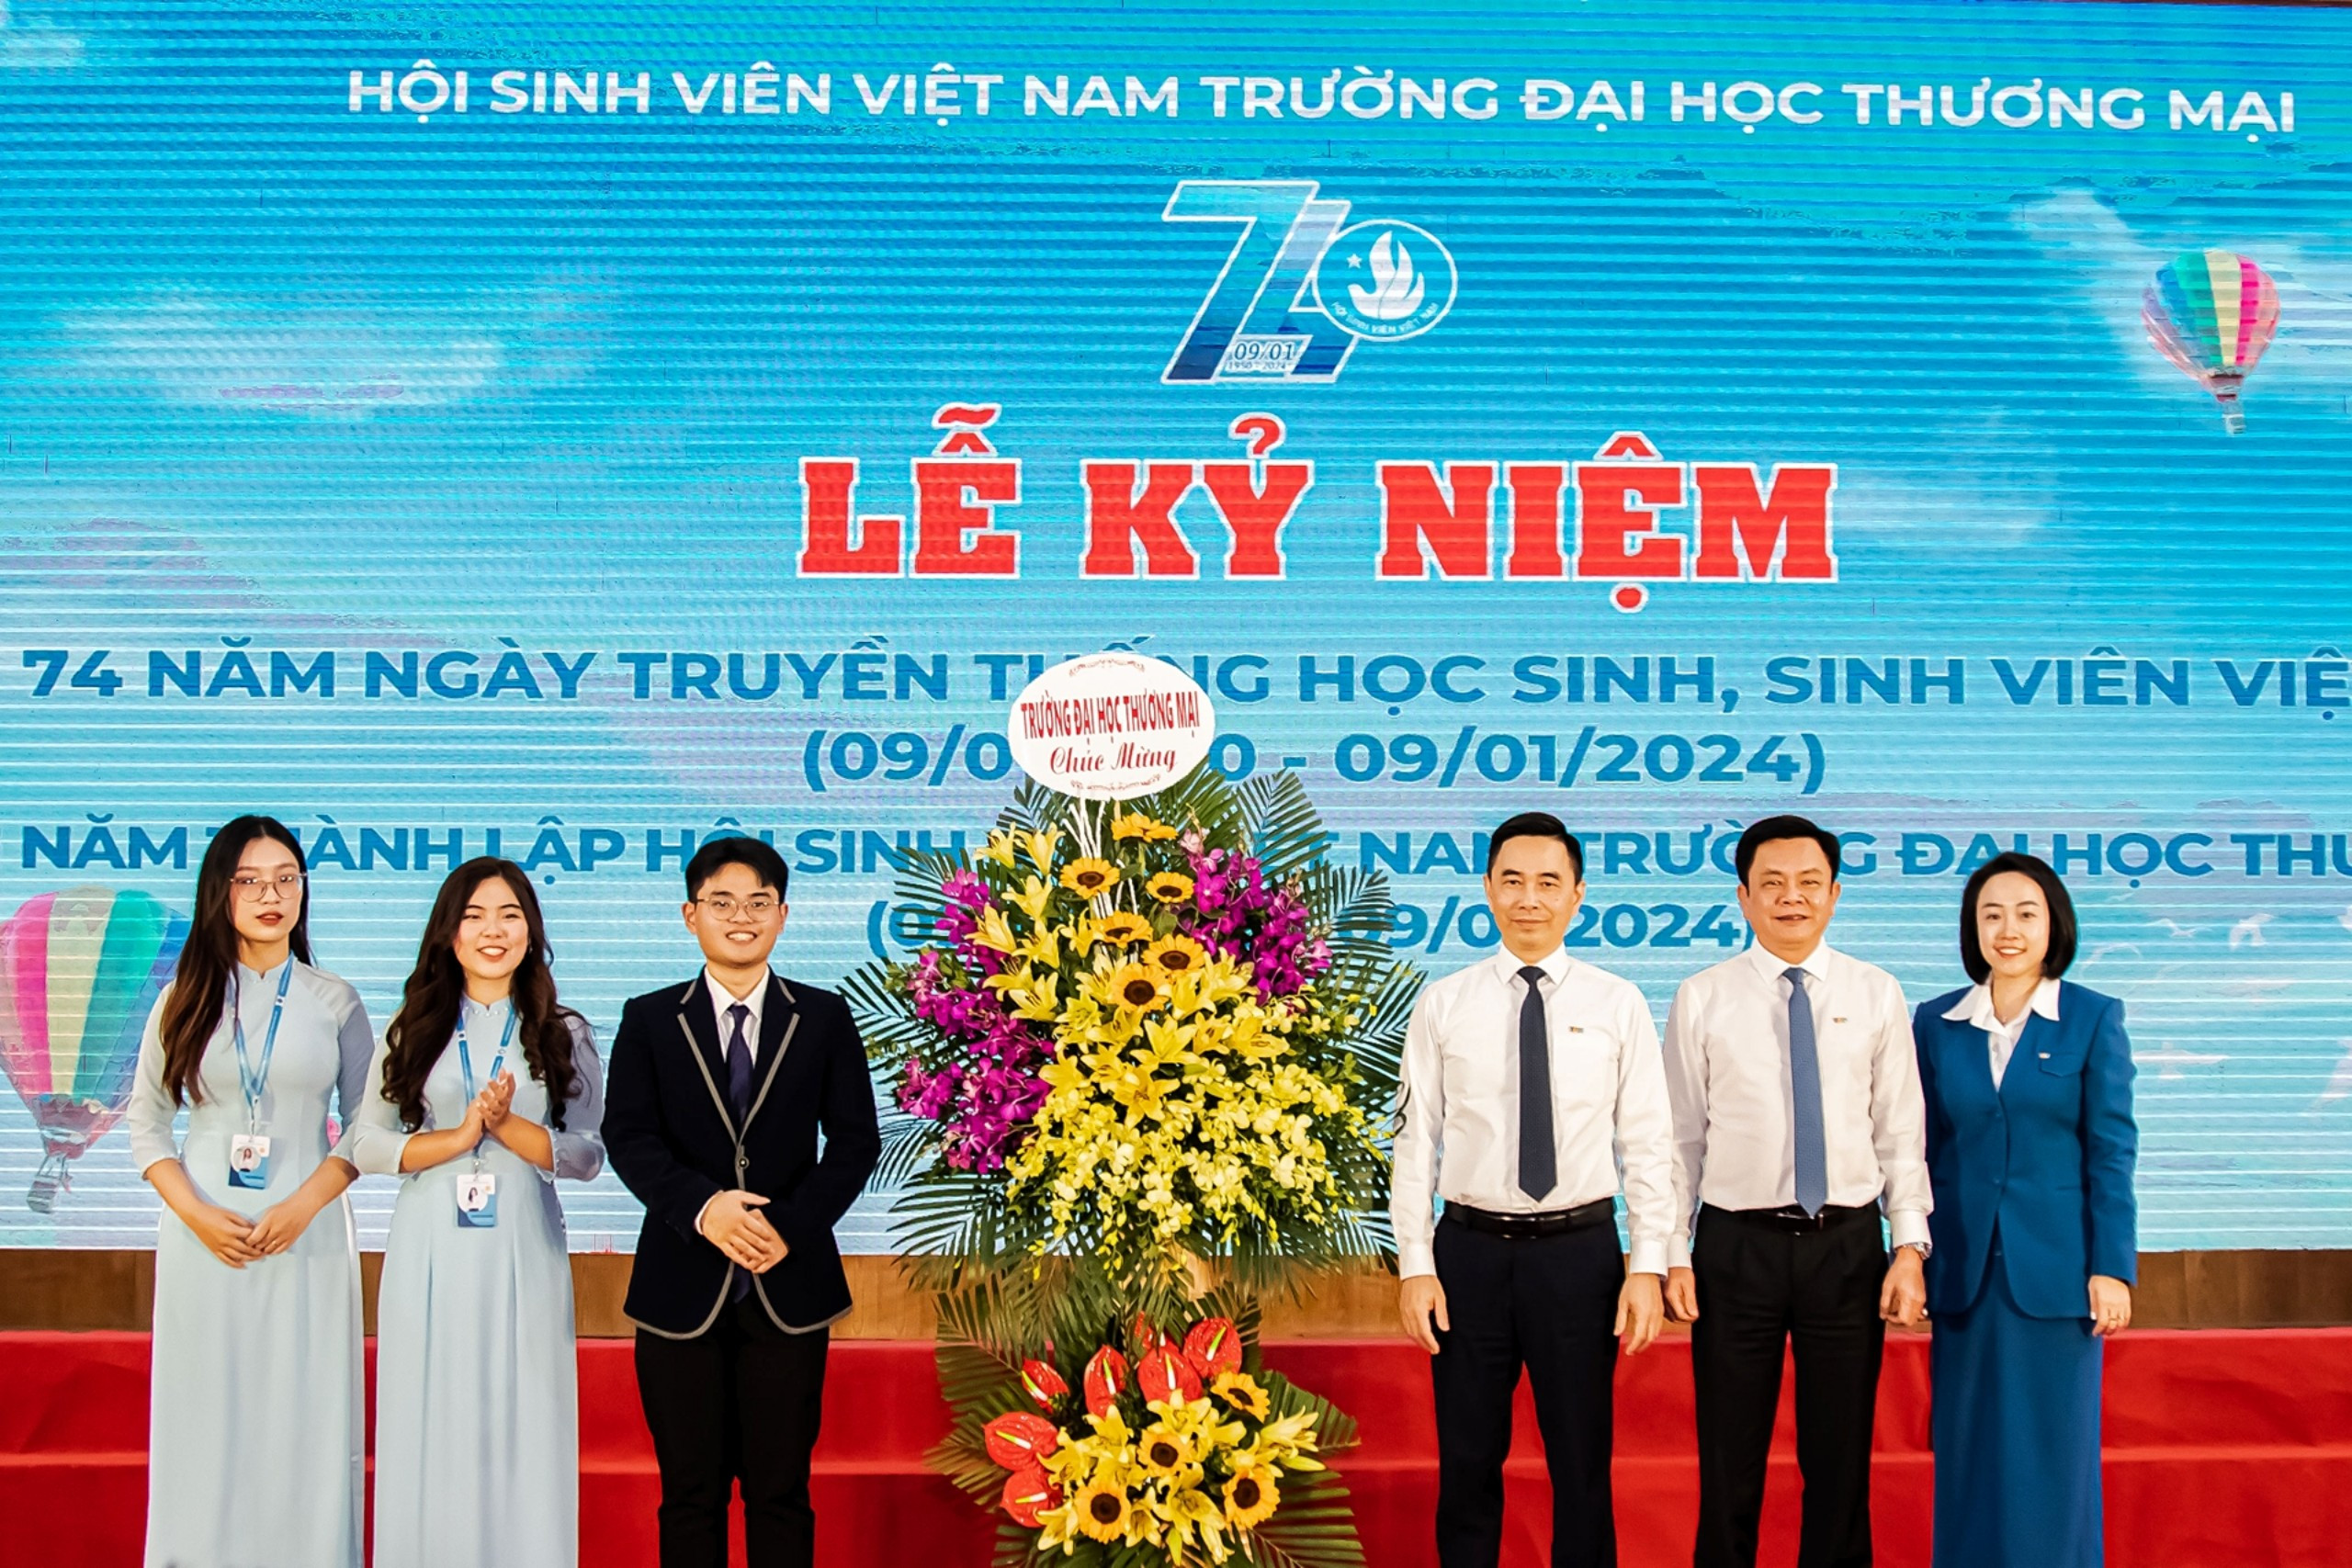 Lễ Kỷ niệm 74 năm Ngày truyền thống Học sinh, Sinh viên và Hội Sinh viên Việt Nam (09/01/1950 - 09/01/2024)